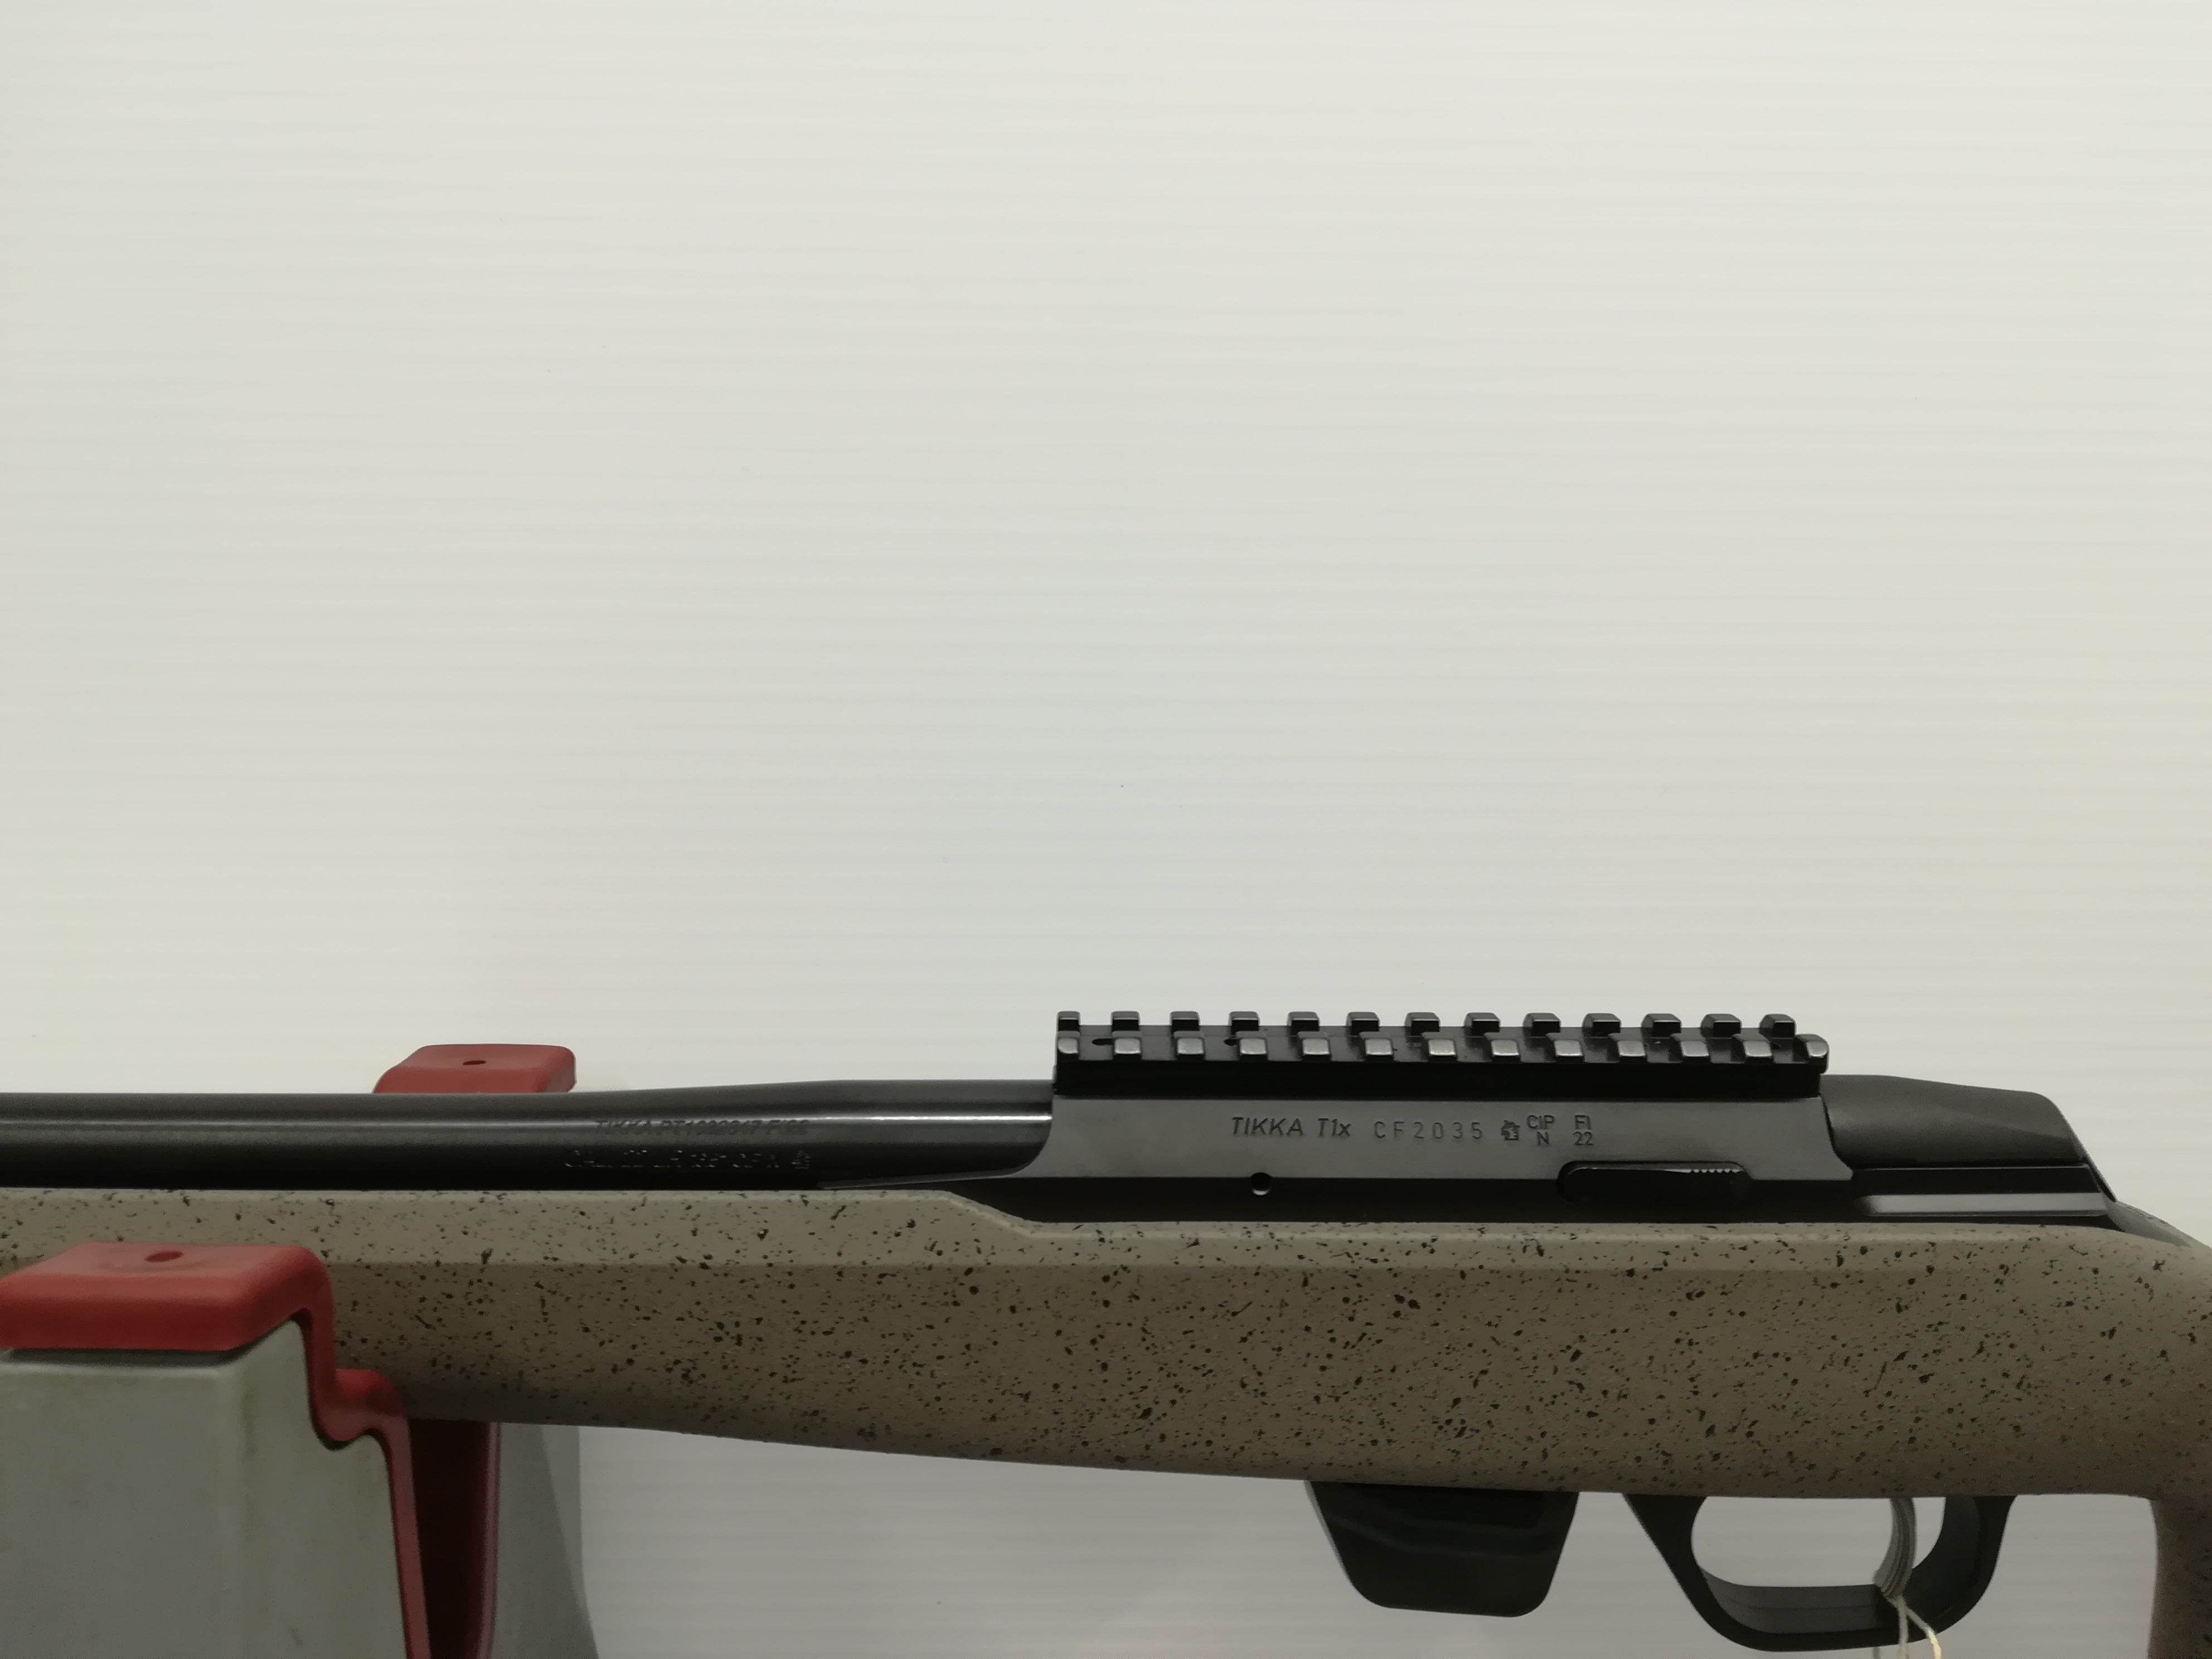 Tikka T1x UPR .22 Rifle